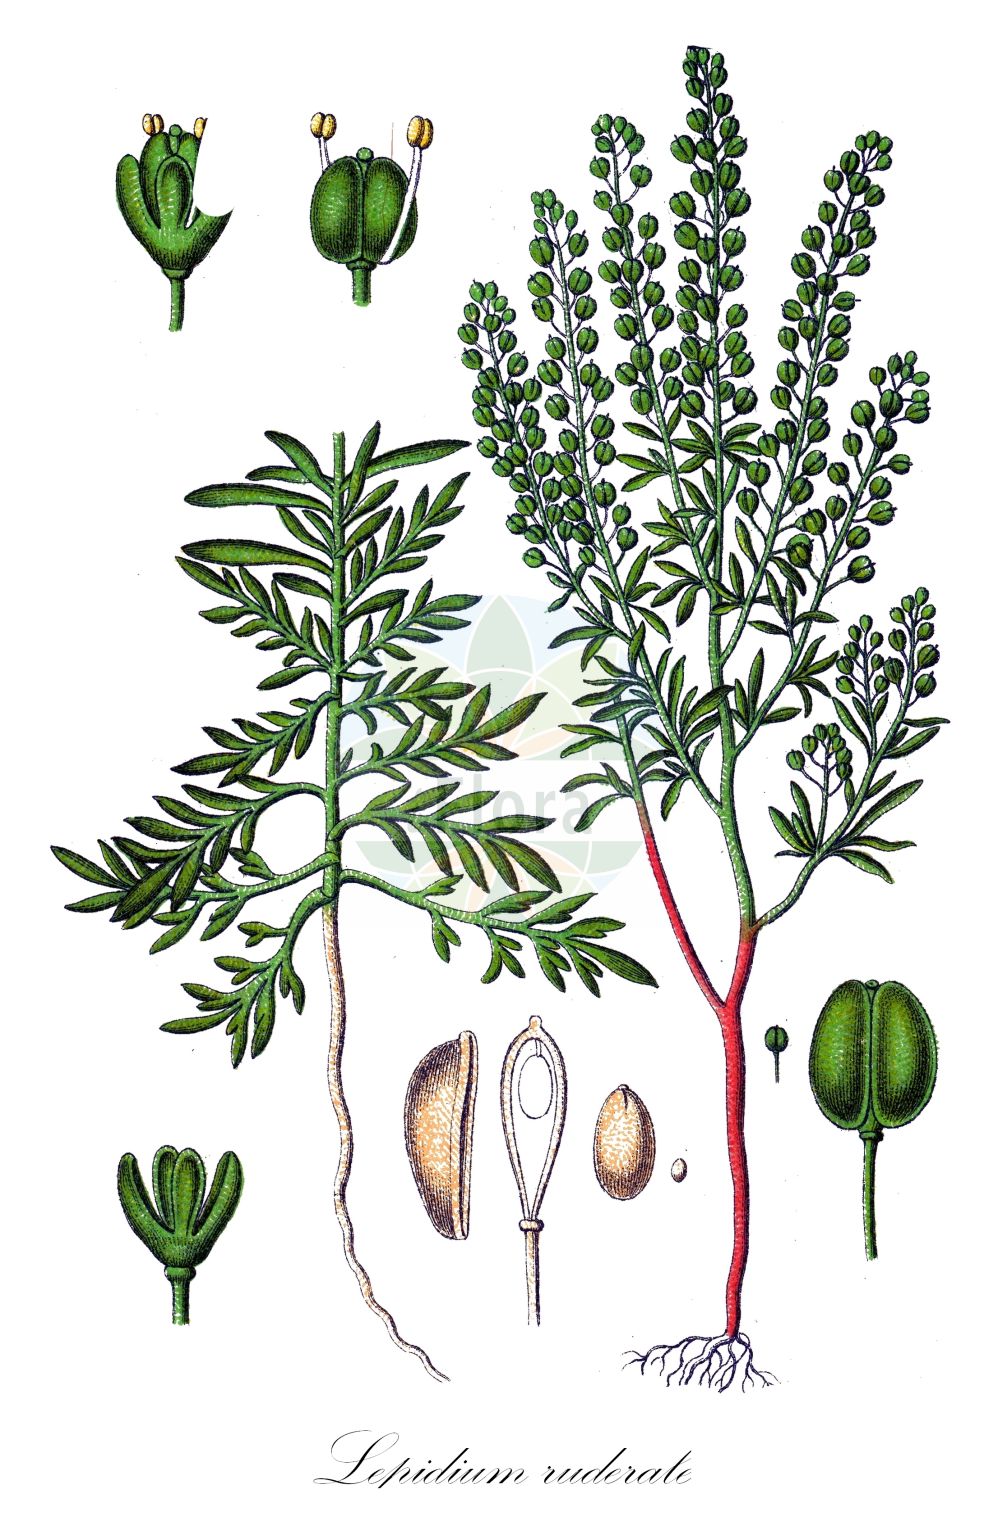 Historische Abbildung von Lepidium ruderale (Schutt-Kresse - Narrow-leaved Pepperwort). Das Bild zeigt Blatt, Bluete, Frucht und Same. ---- Historical Drawing of Lepidium ruderale (Schutt-Kresse - Narrow-leaved Pepperwort). The image is showing leaf, flower, fruit and seed.(Lepidium ruderale,Schutt-Kresse,Narrow-leaved Pepperwort,Lepidium ambiguum,Lepidium ruderale,Schutt-Kresse,Weg-Kresse,Narrow-leaved Pepperwort,Narrow-leaf Pepperweed,Roadside Pepperweed,Narrow-leaved Cress,Peppercress,Rubbish Pepperwort,Lepidium,Kresse,Pepperweed,Brassicaceae,Kreuzblütler,Cabbage family,Blatt,Bluete,Frucht,Same,leaf,flower,fruit,seed,Sturm (1796f))